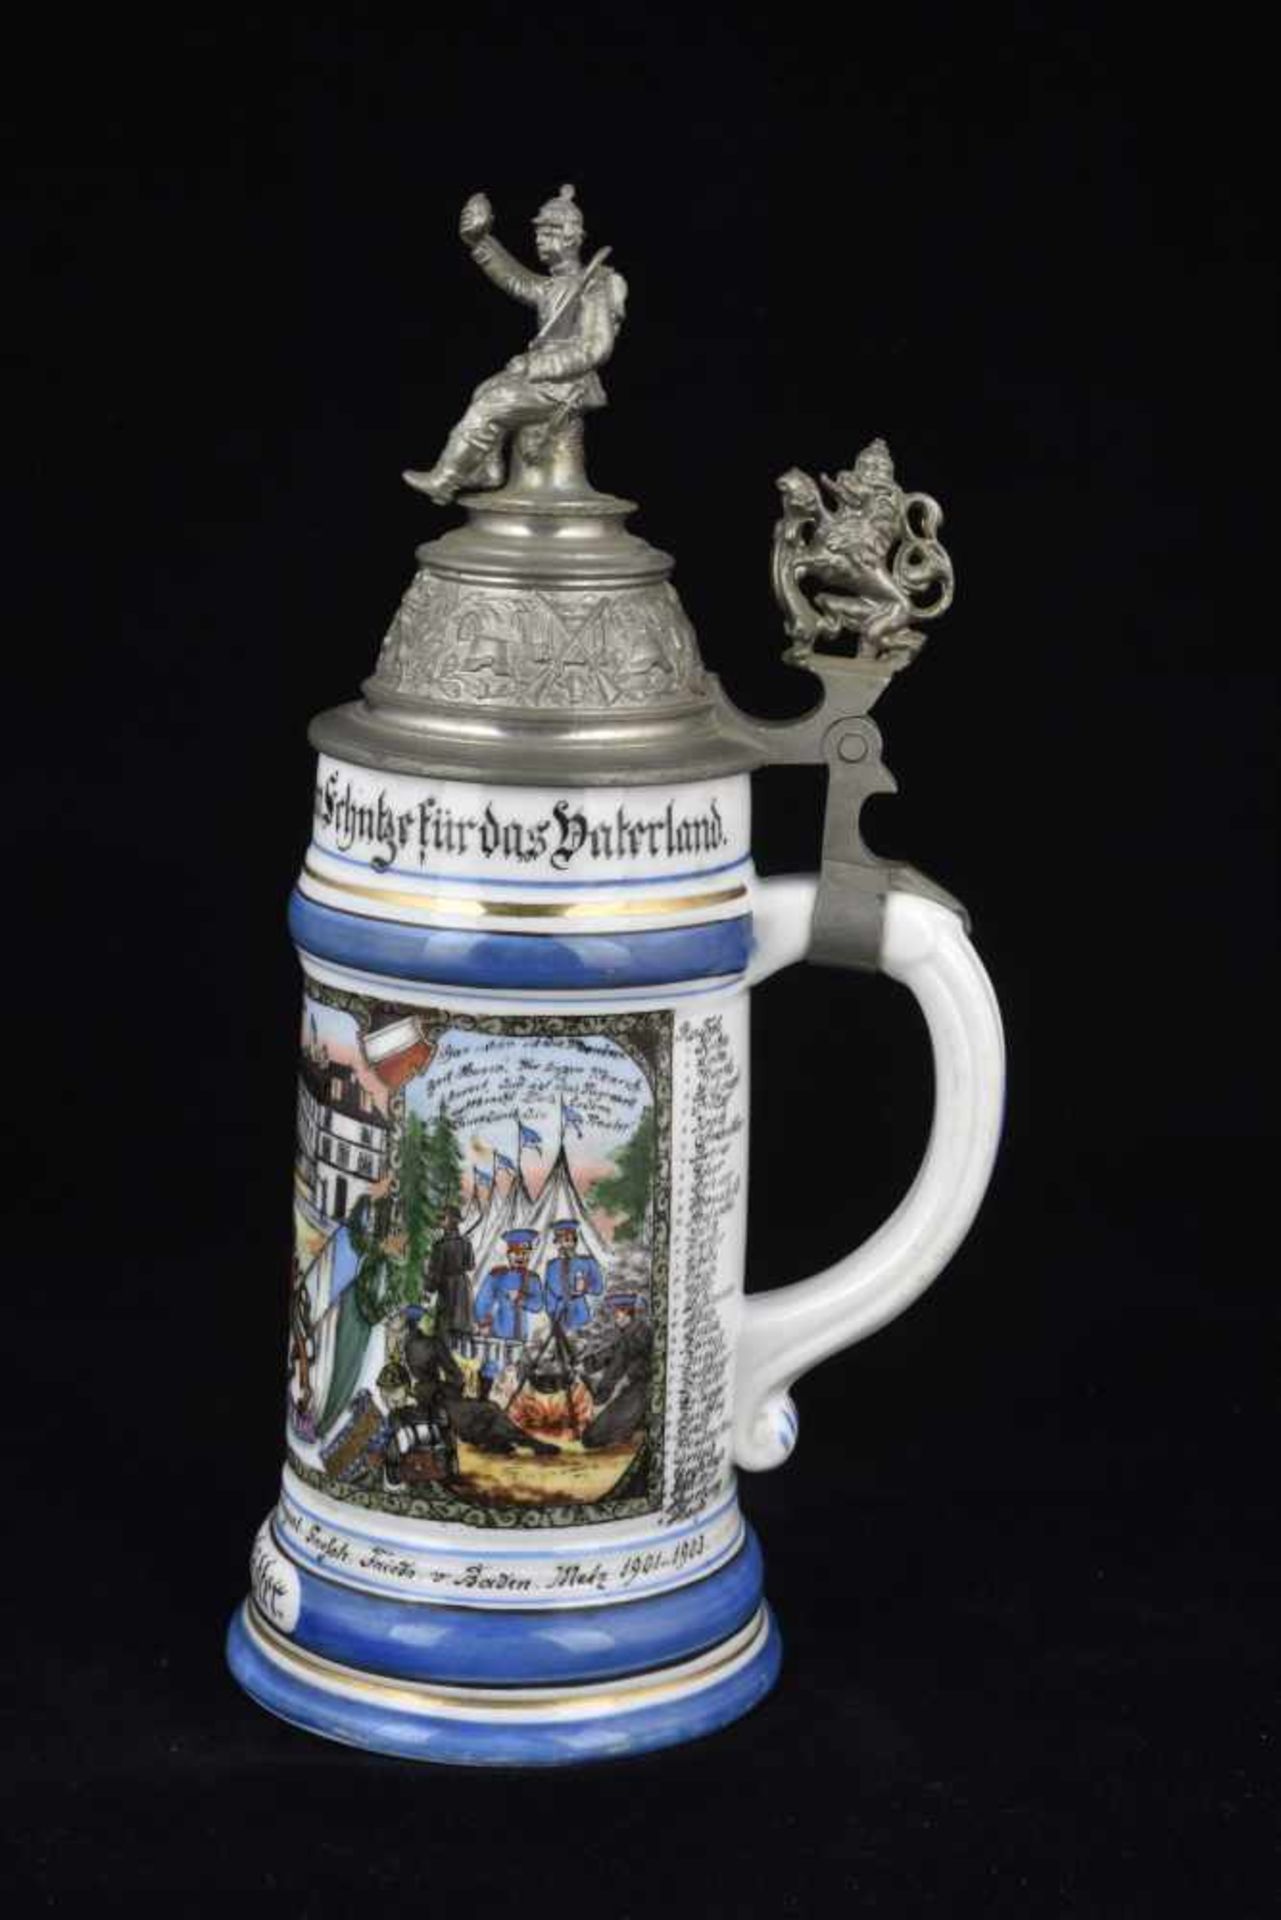 Chope de réserviste de l'Infanterie de Metz Chope en porcelaine d'un demi-litre attribuée à : Bayer. - Image 3 of 4